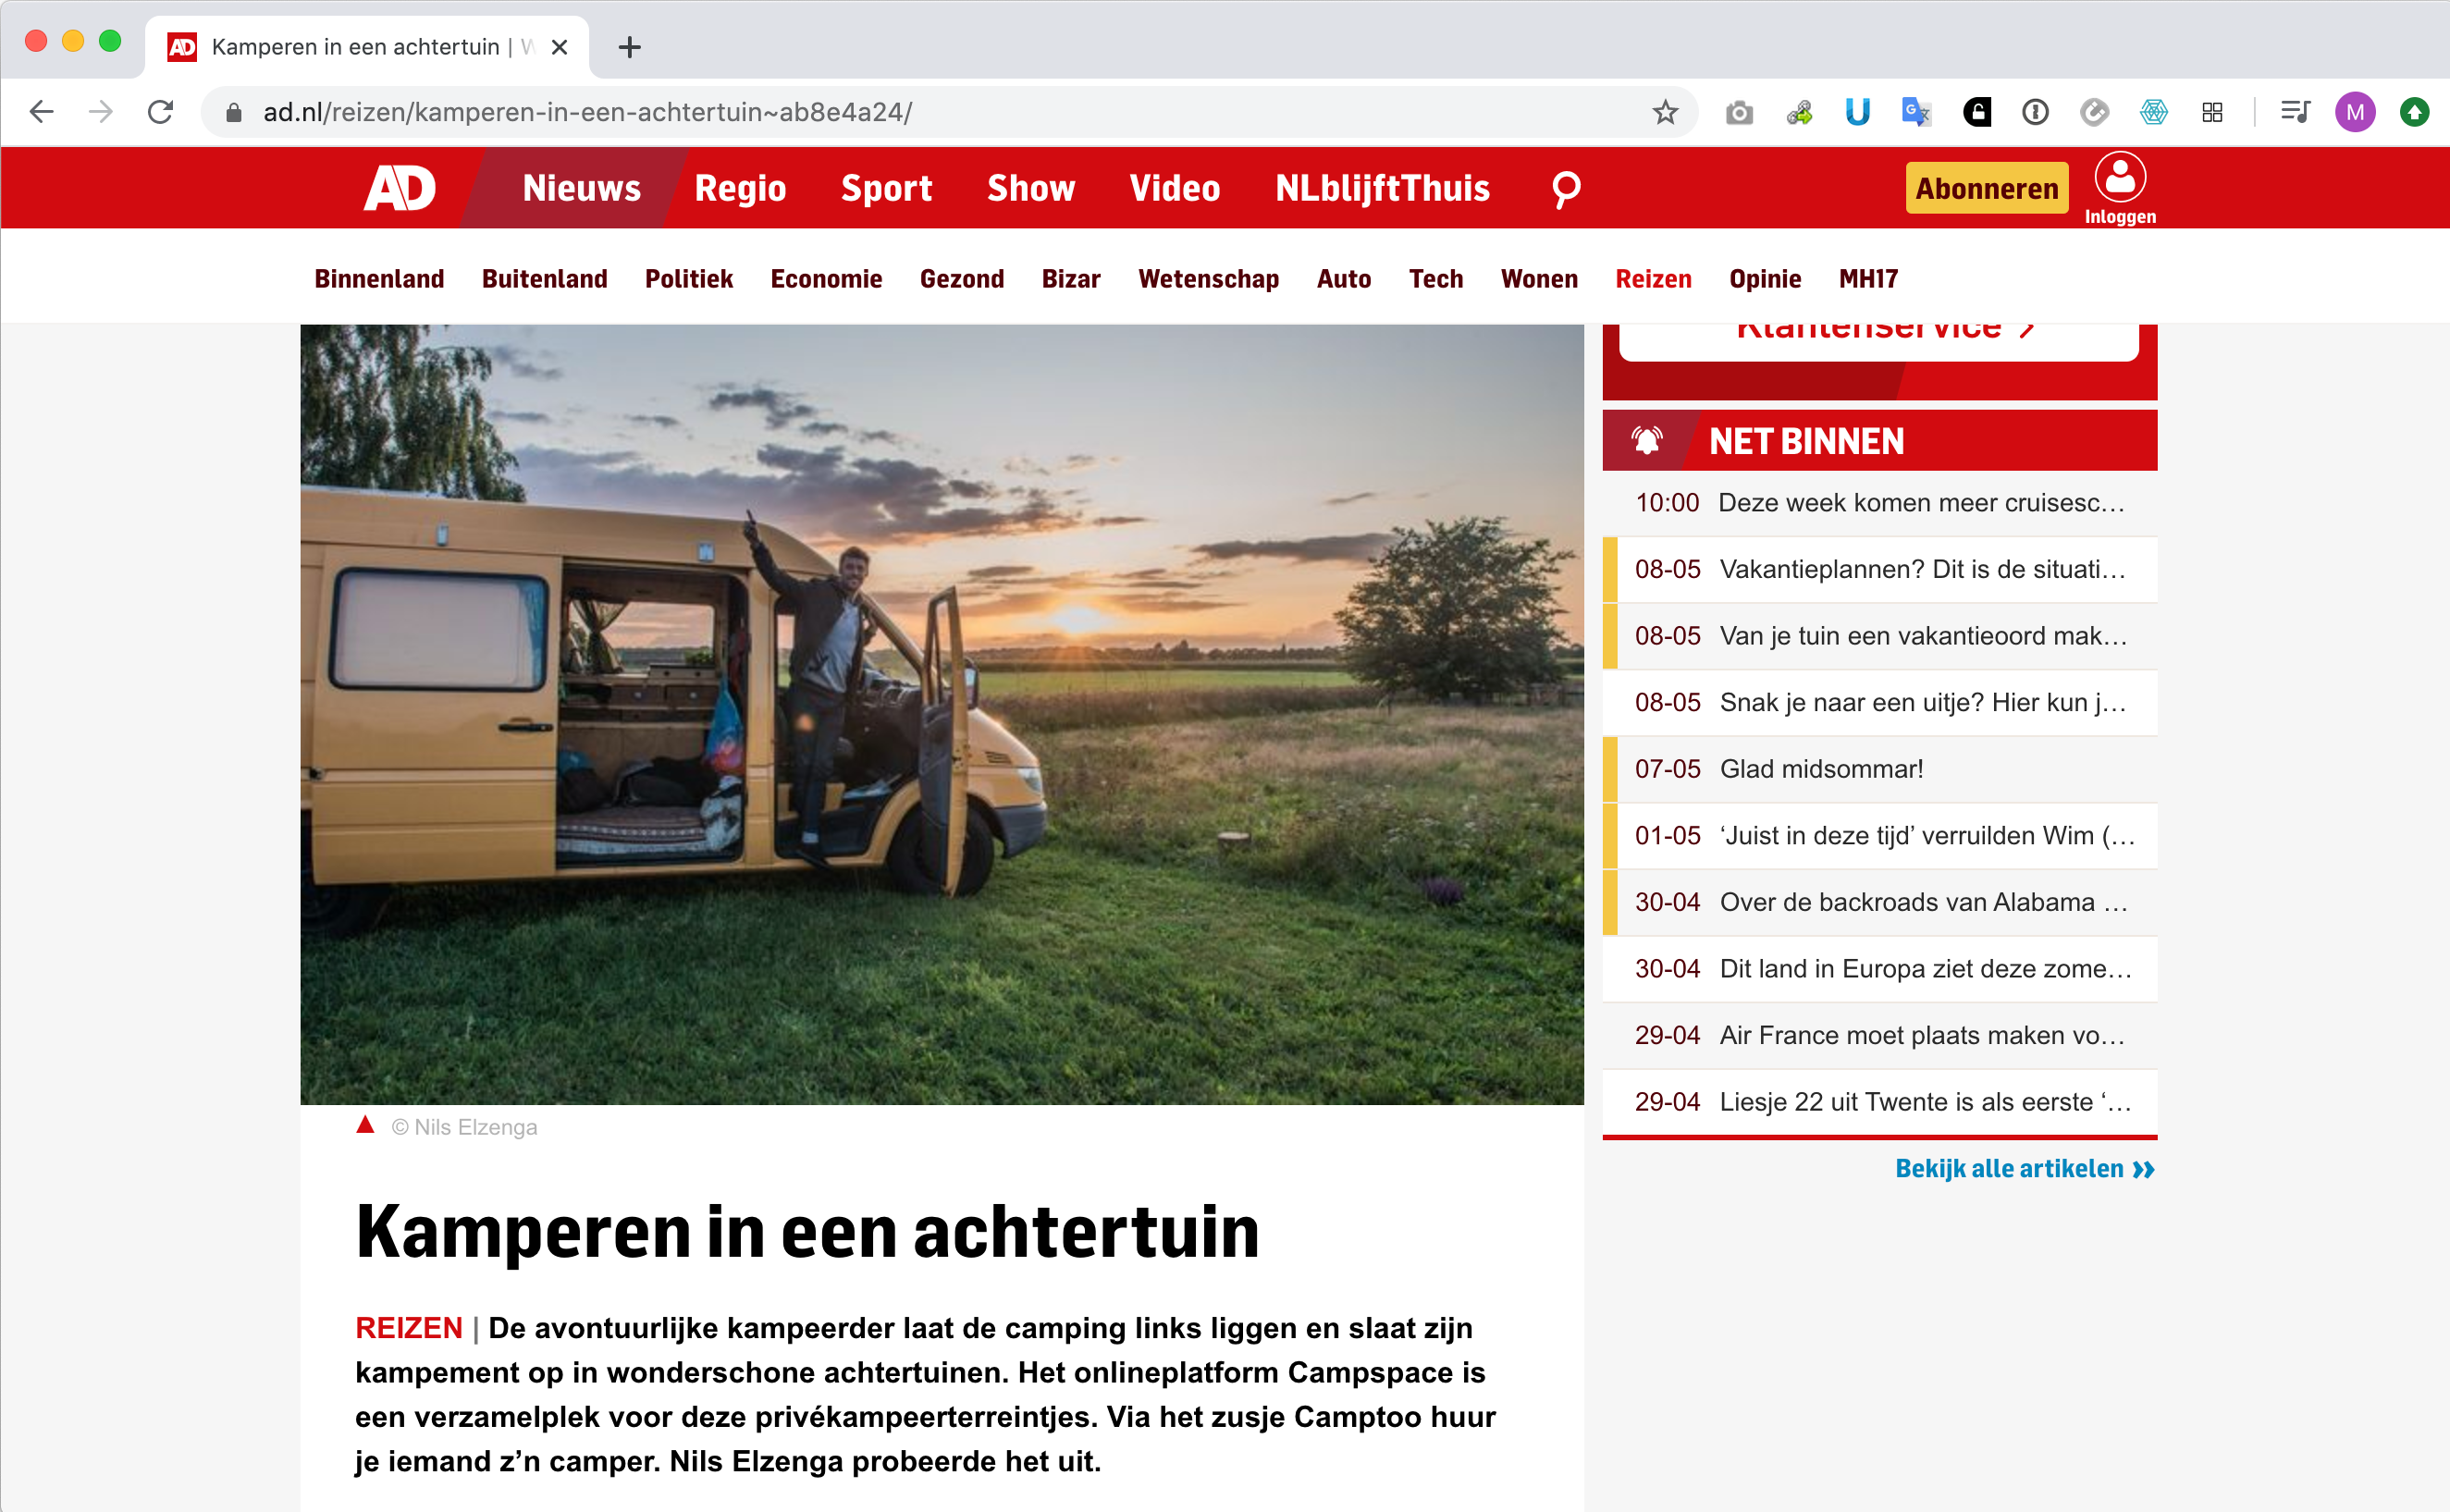 March 5, 2020 — Algemeen Dagblad om 'Camping i en baghave'